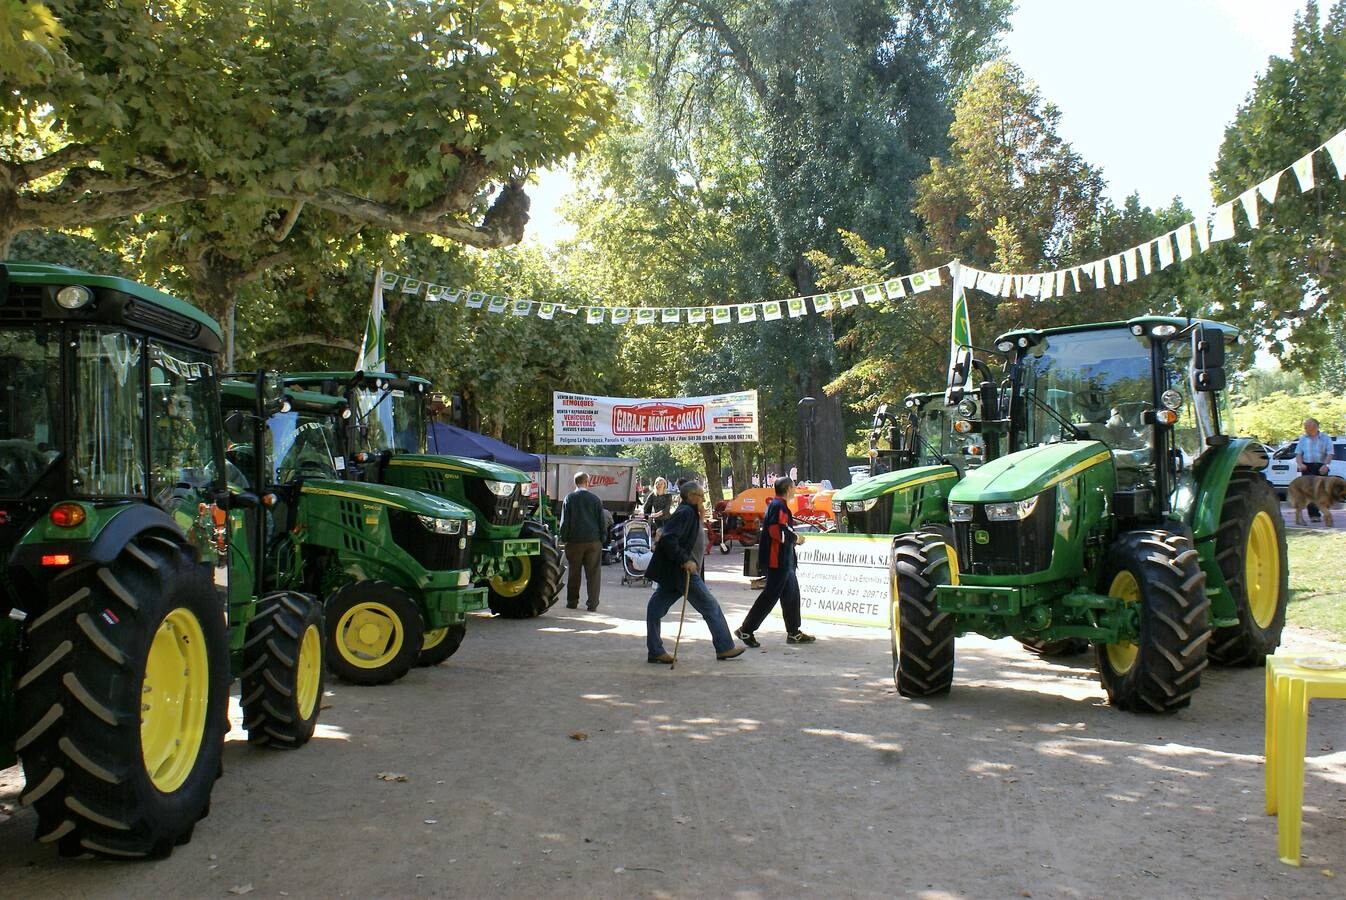 Este fin de semana se celebran las ferias de maquinaria agrícola, industrial y automoción. Además, se puede disfrutar del tradicional mercado artesanal